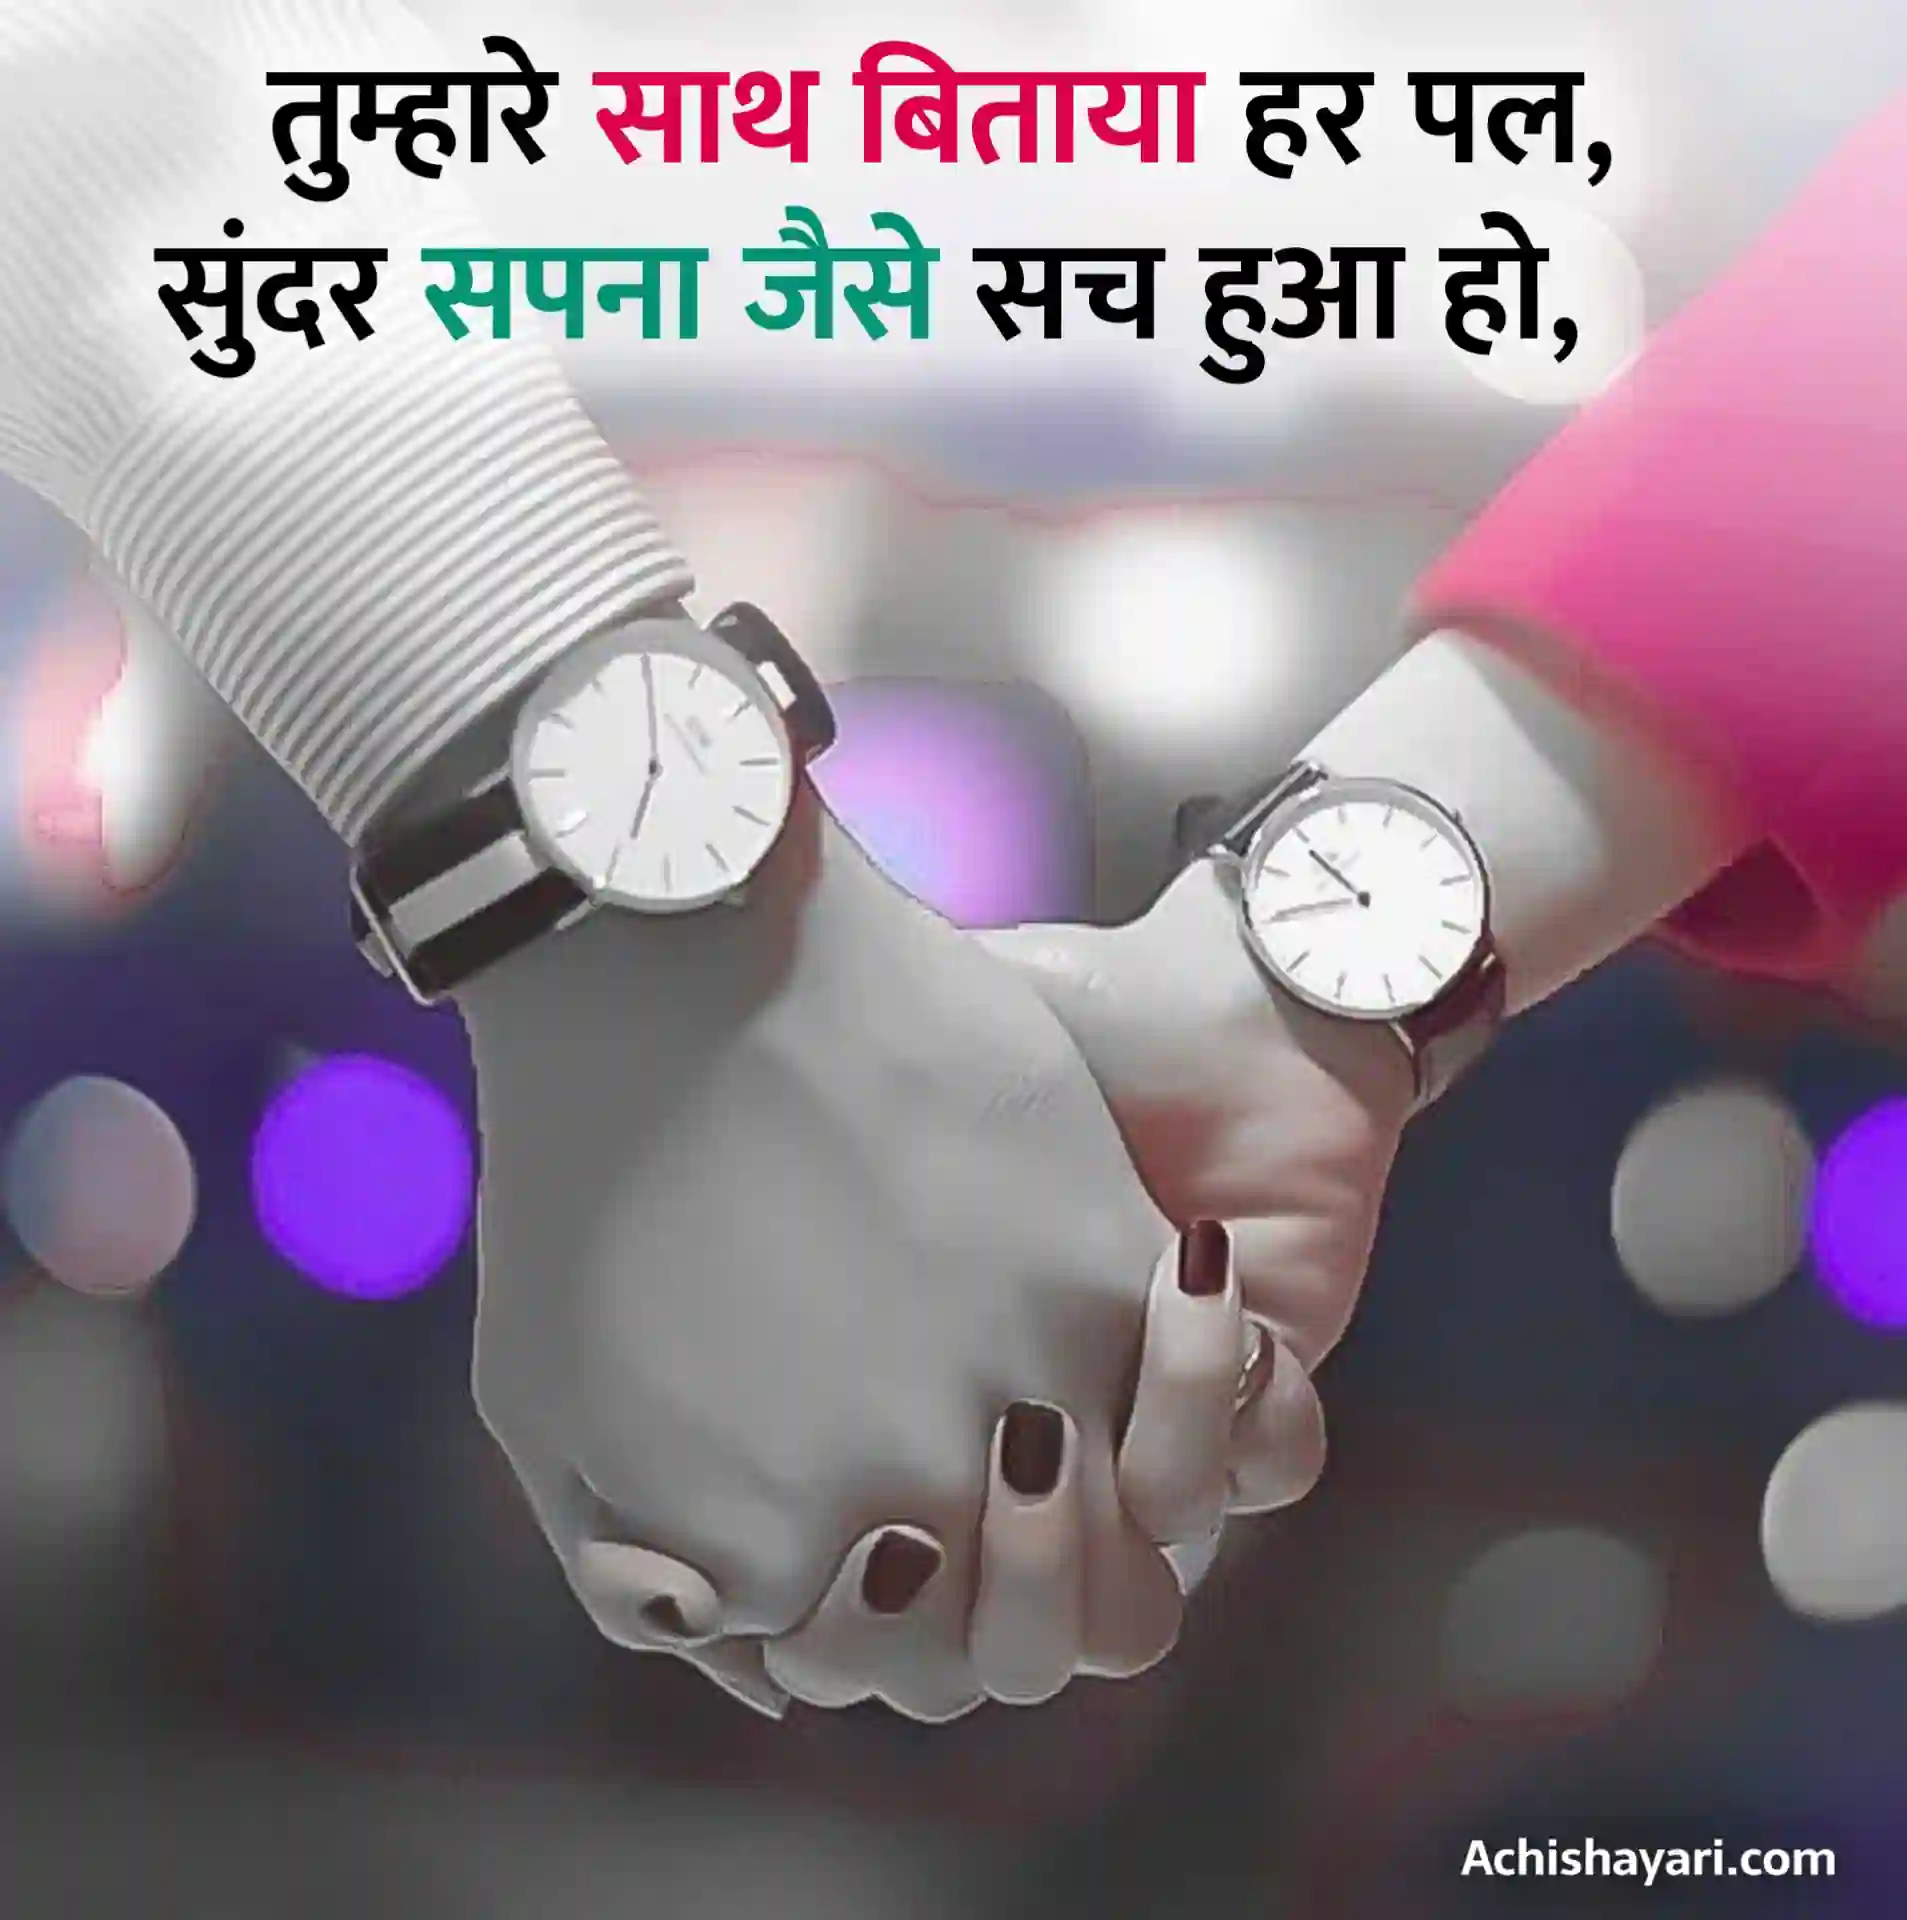 Love Shayari Hindi Image